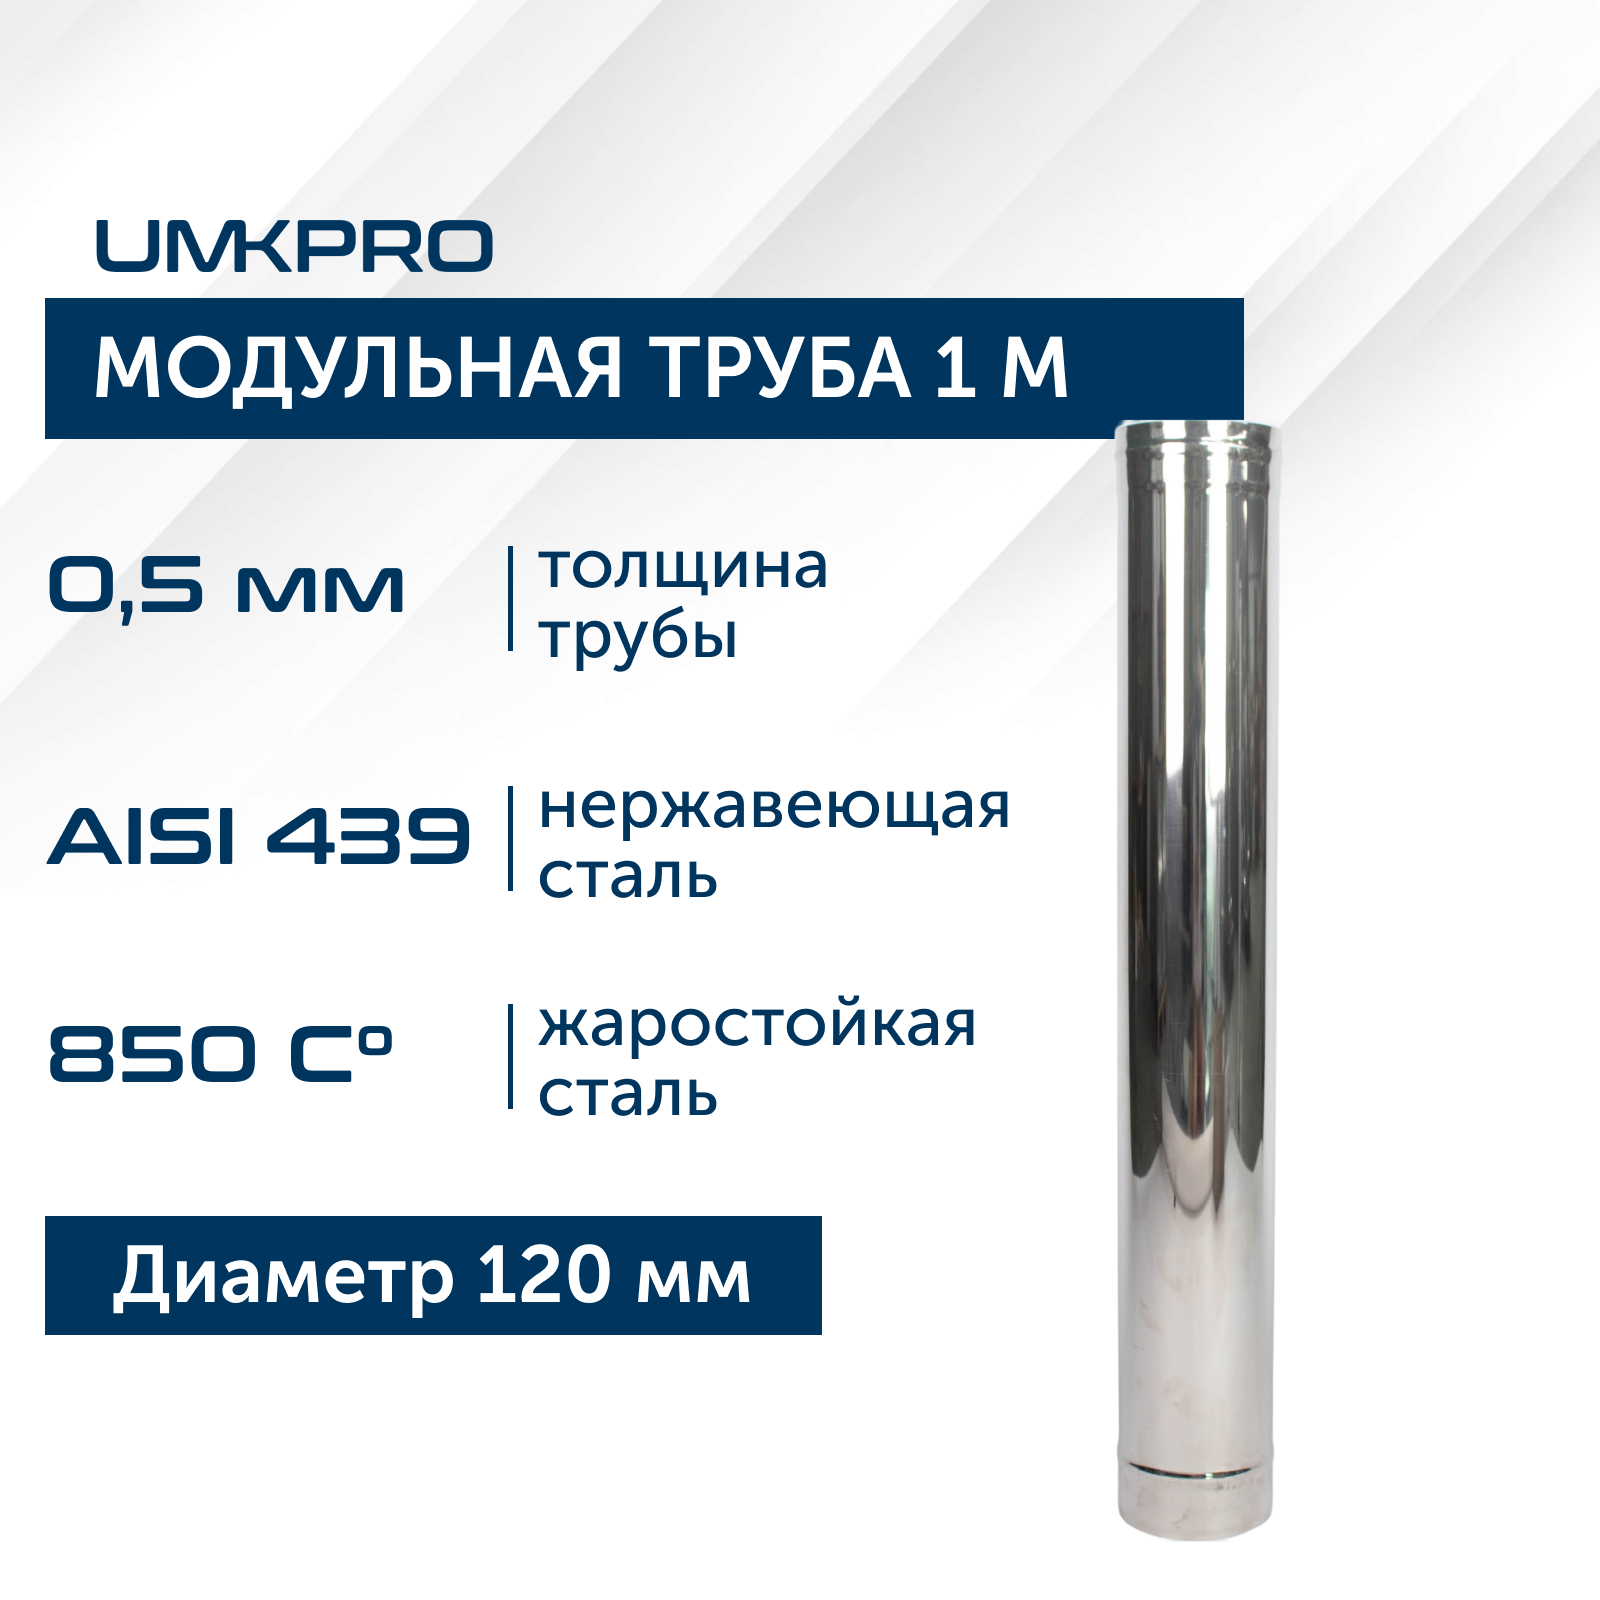 Труба модульная для дымохода 1 м UMKPRO D 120, AISI 439/0,5мм